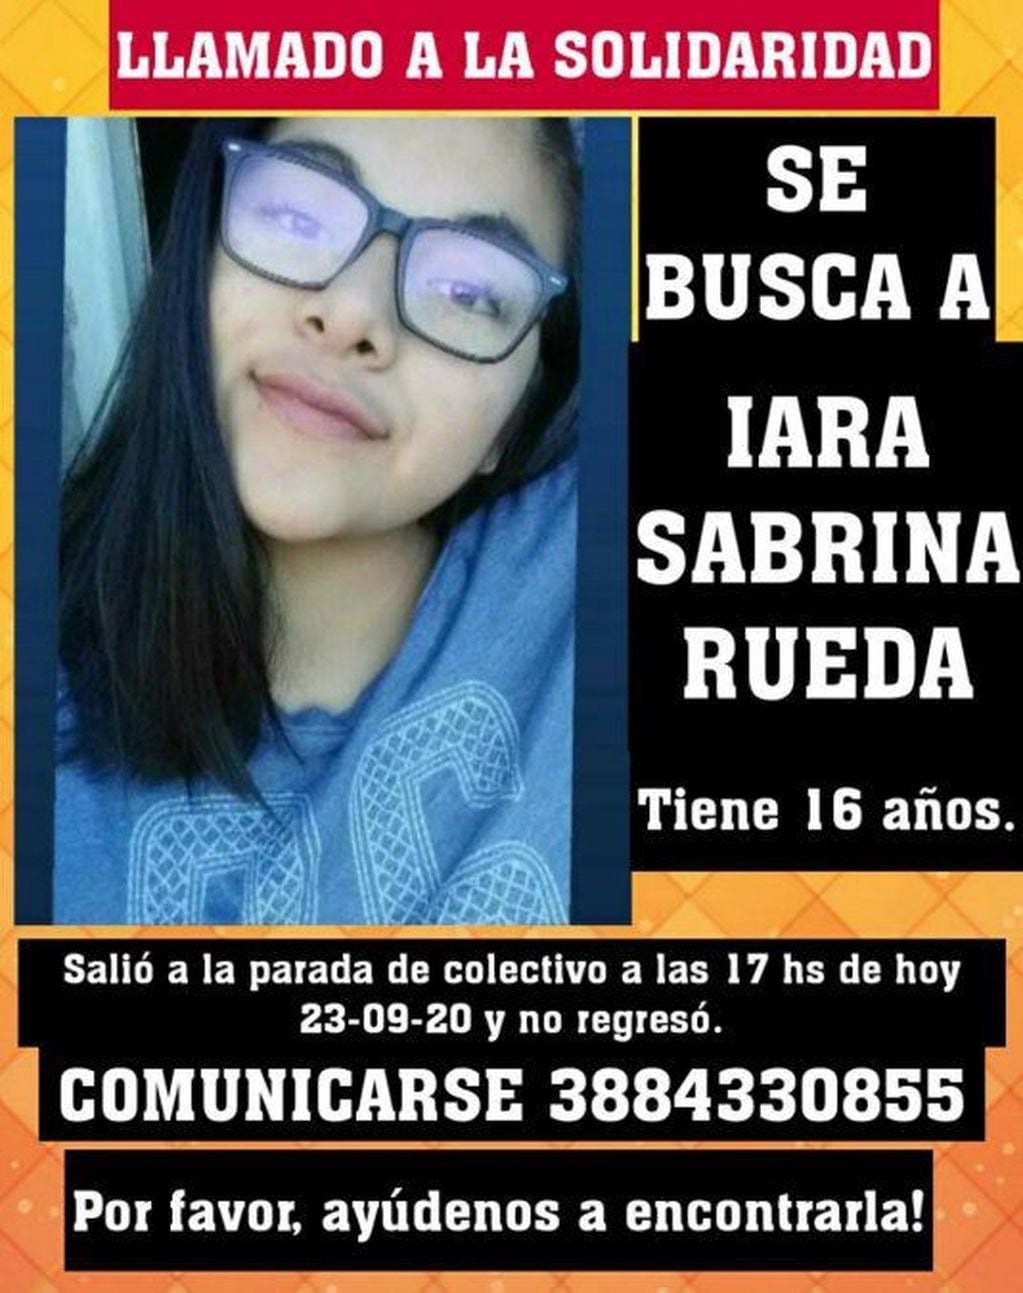 Flyer distribuido por redes sociales en el que se ve a la menor Iara Sabrina Rueda, que es buscada en Palpalá.